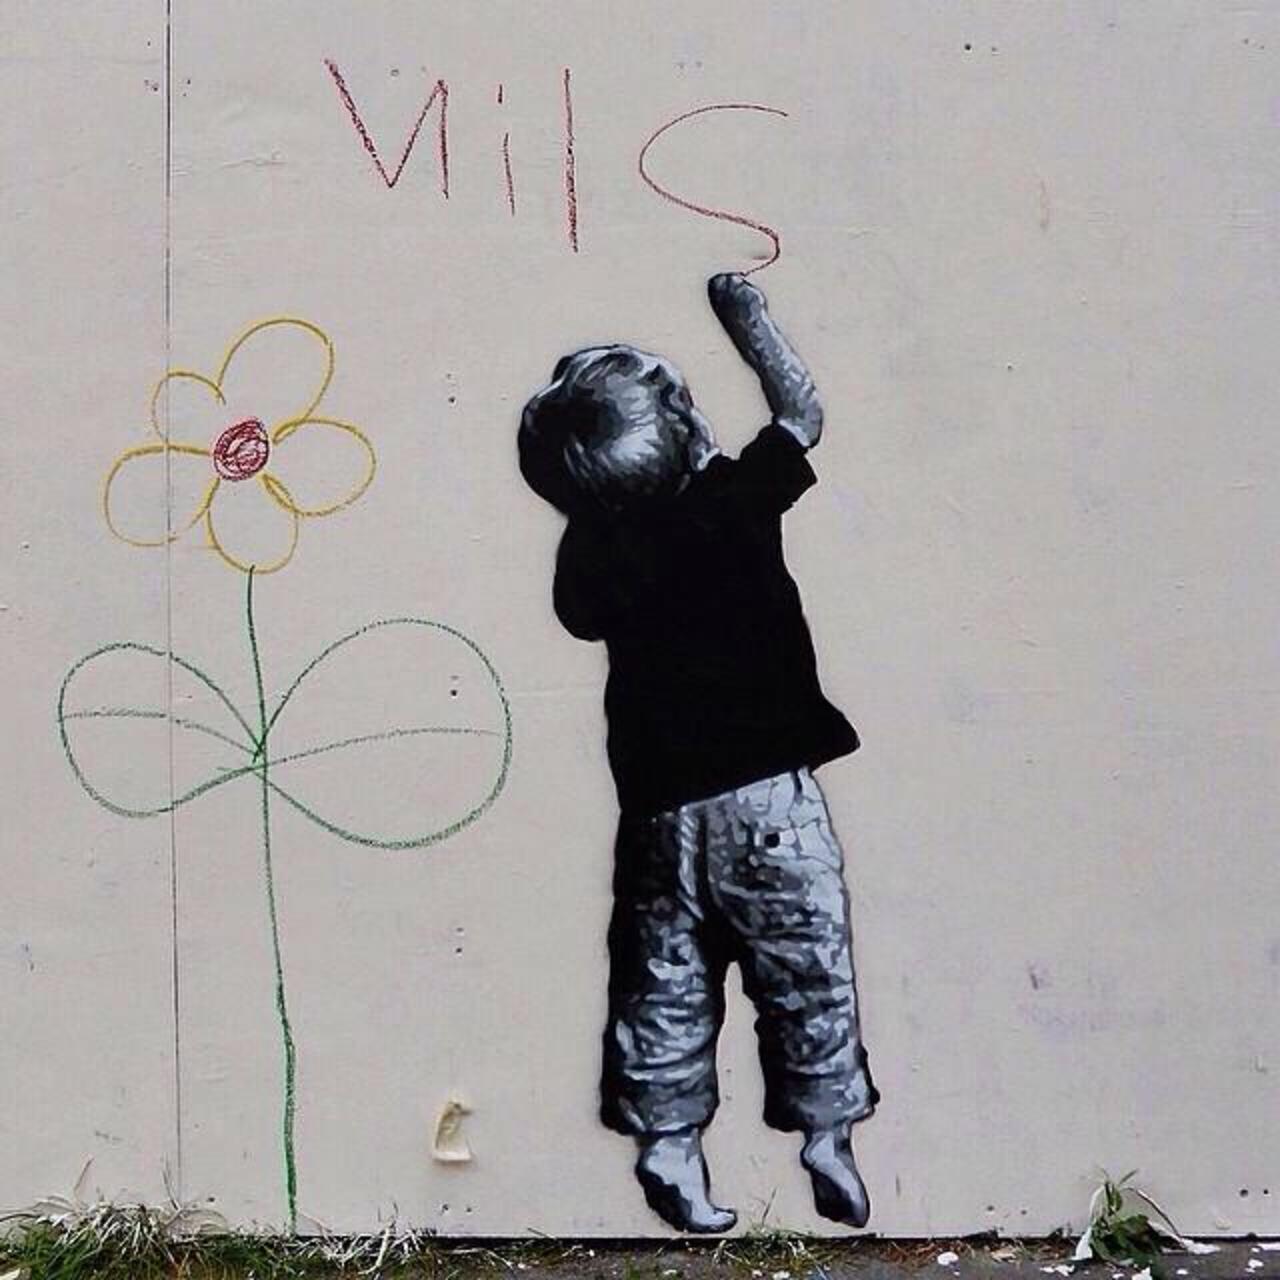 Just fab! #streetart work in Shoreditch, London, UK.  #art #graffiti #mural http://t.co/jxPdoMdBQa